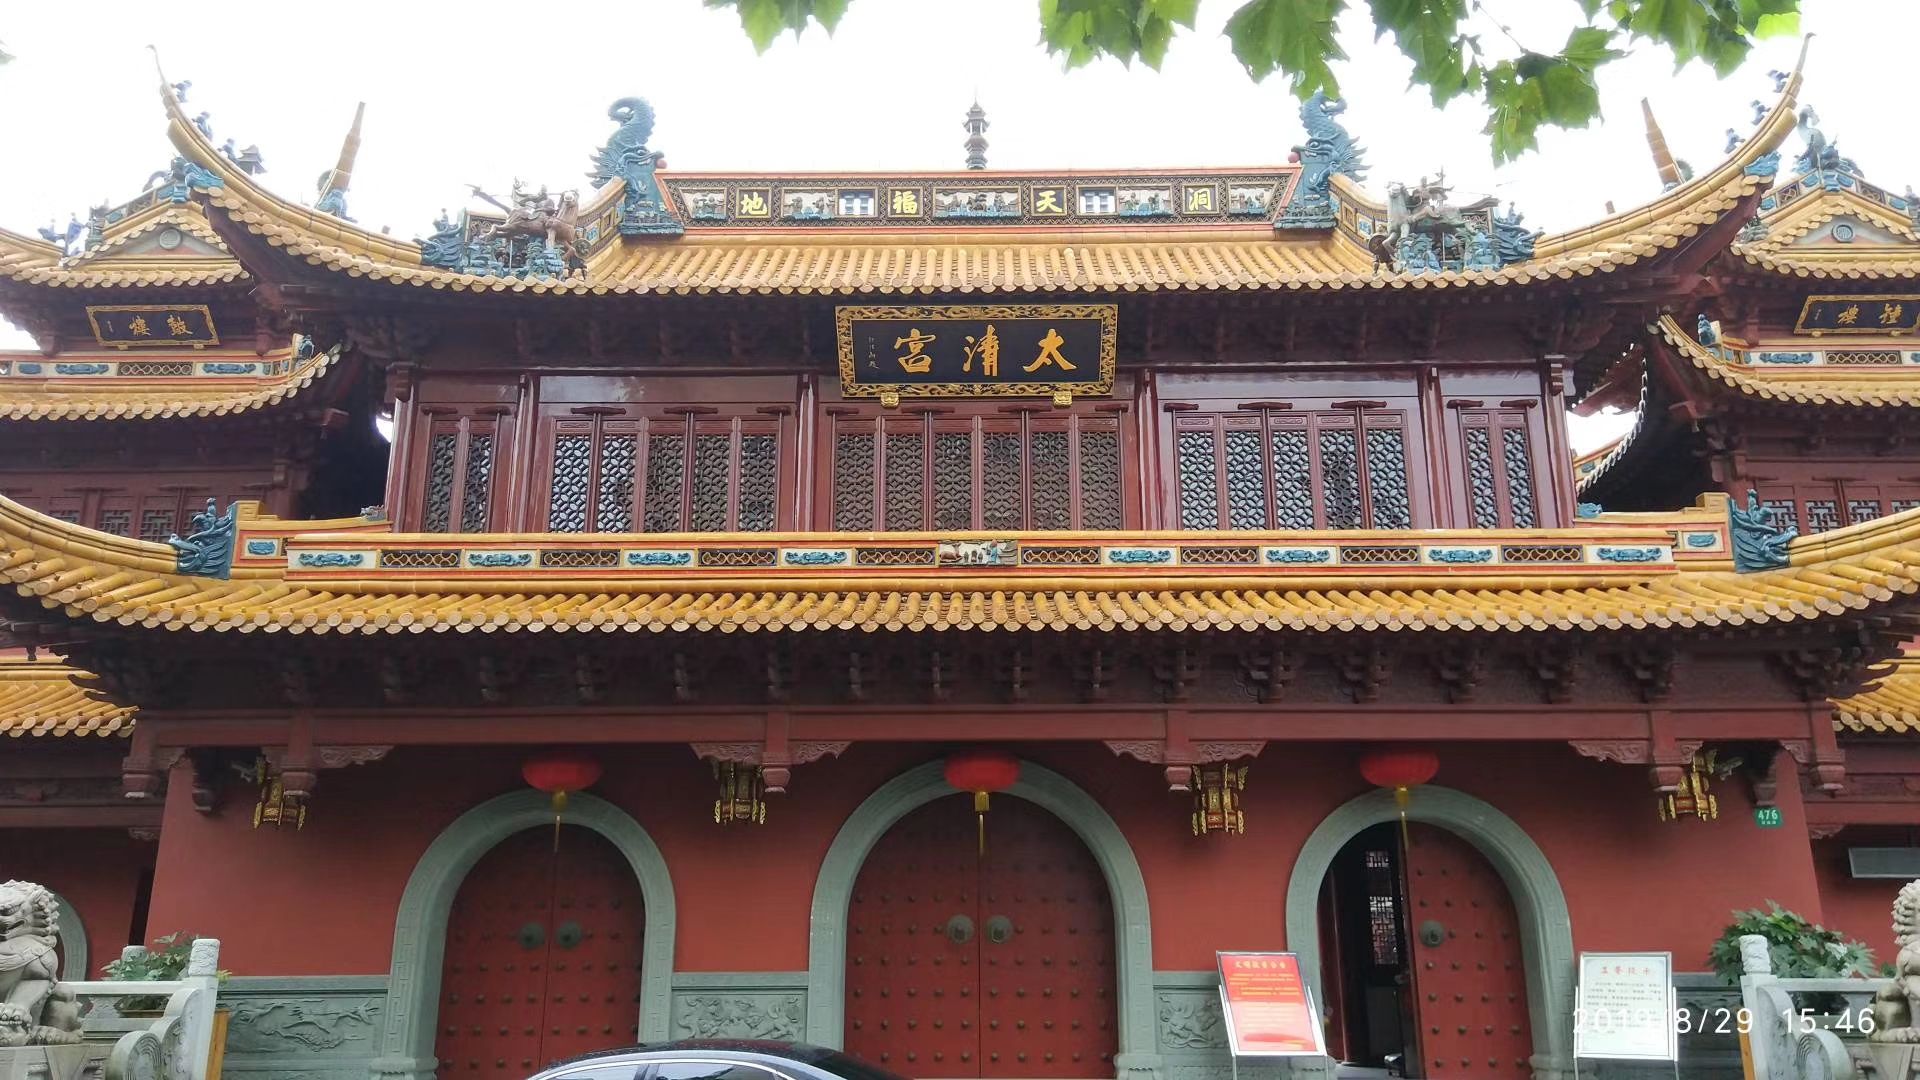 钦赐仰殿（太清宫）是上海地区最古老的道教宫观之一，有“千年古观”之誉。始建年代不详，相传始于三国时期